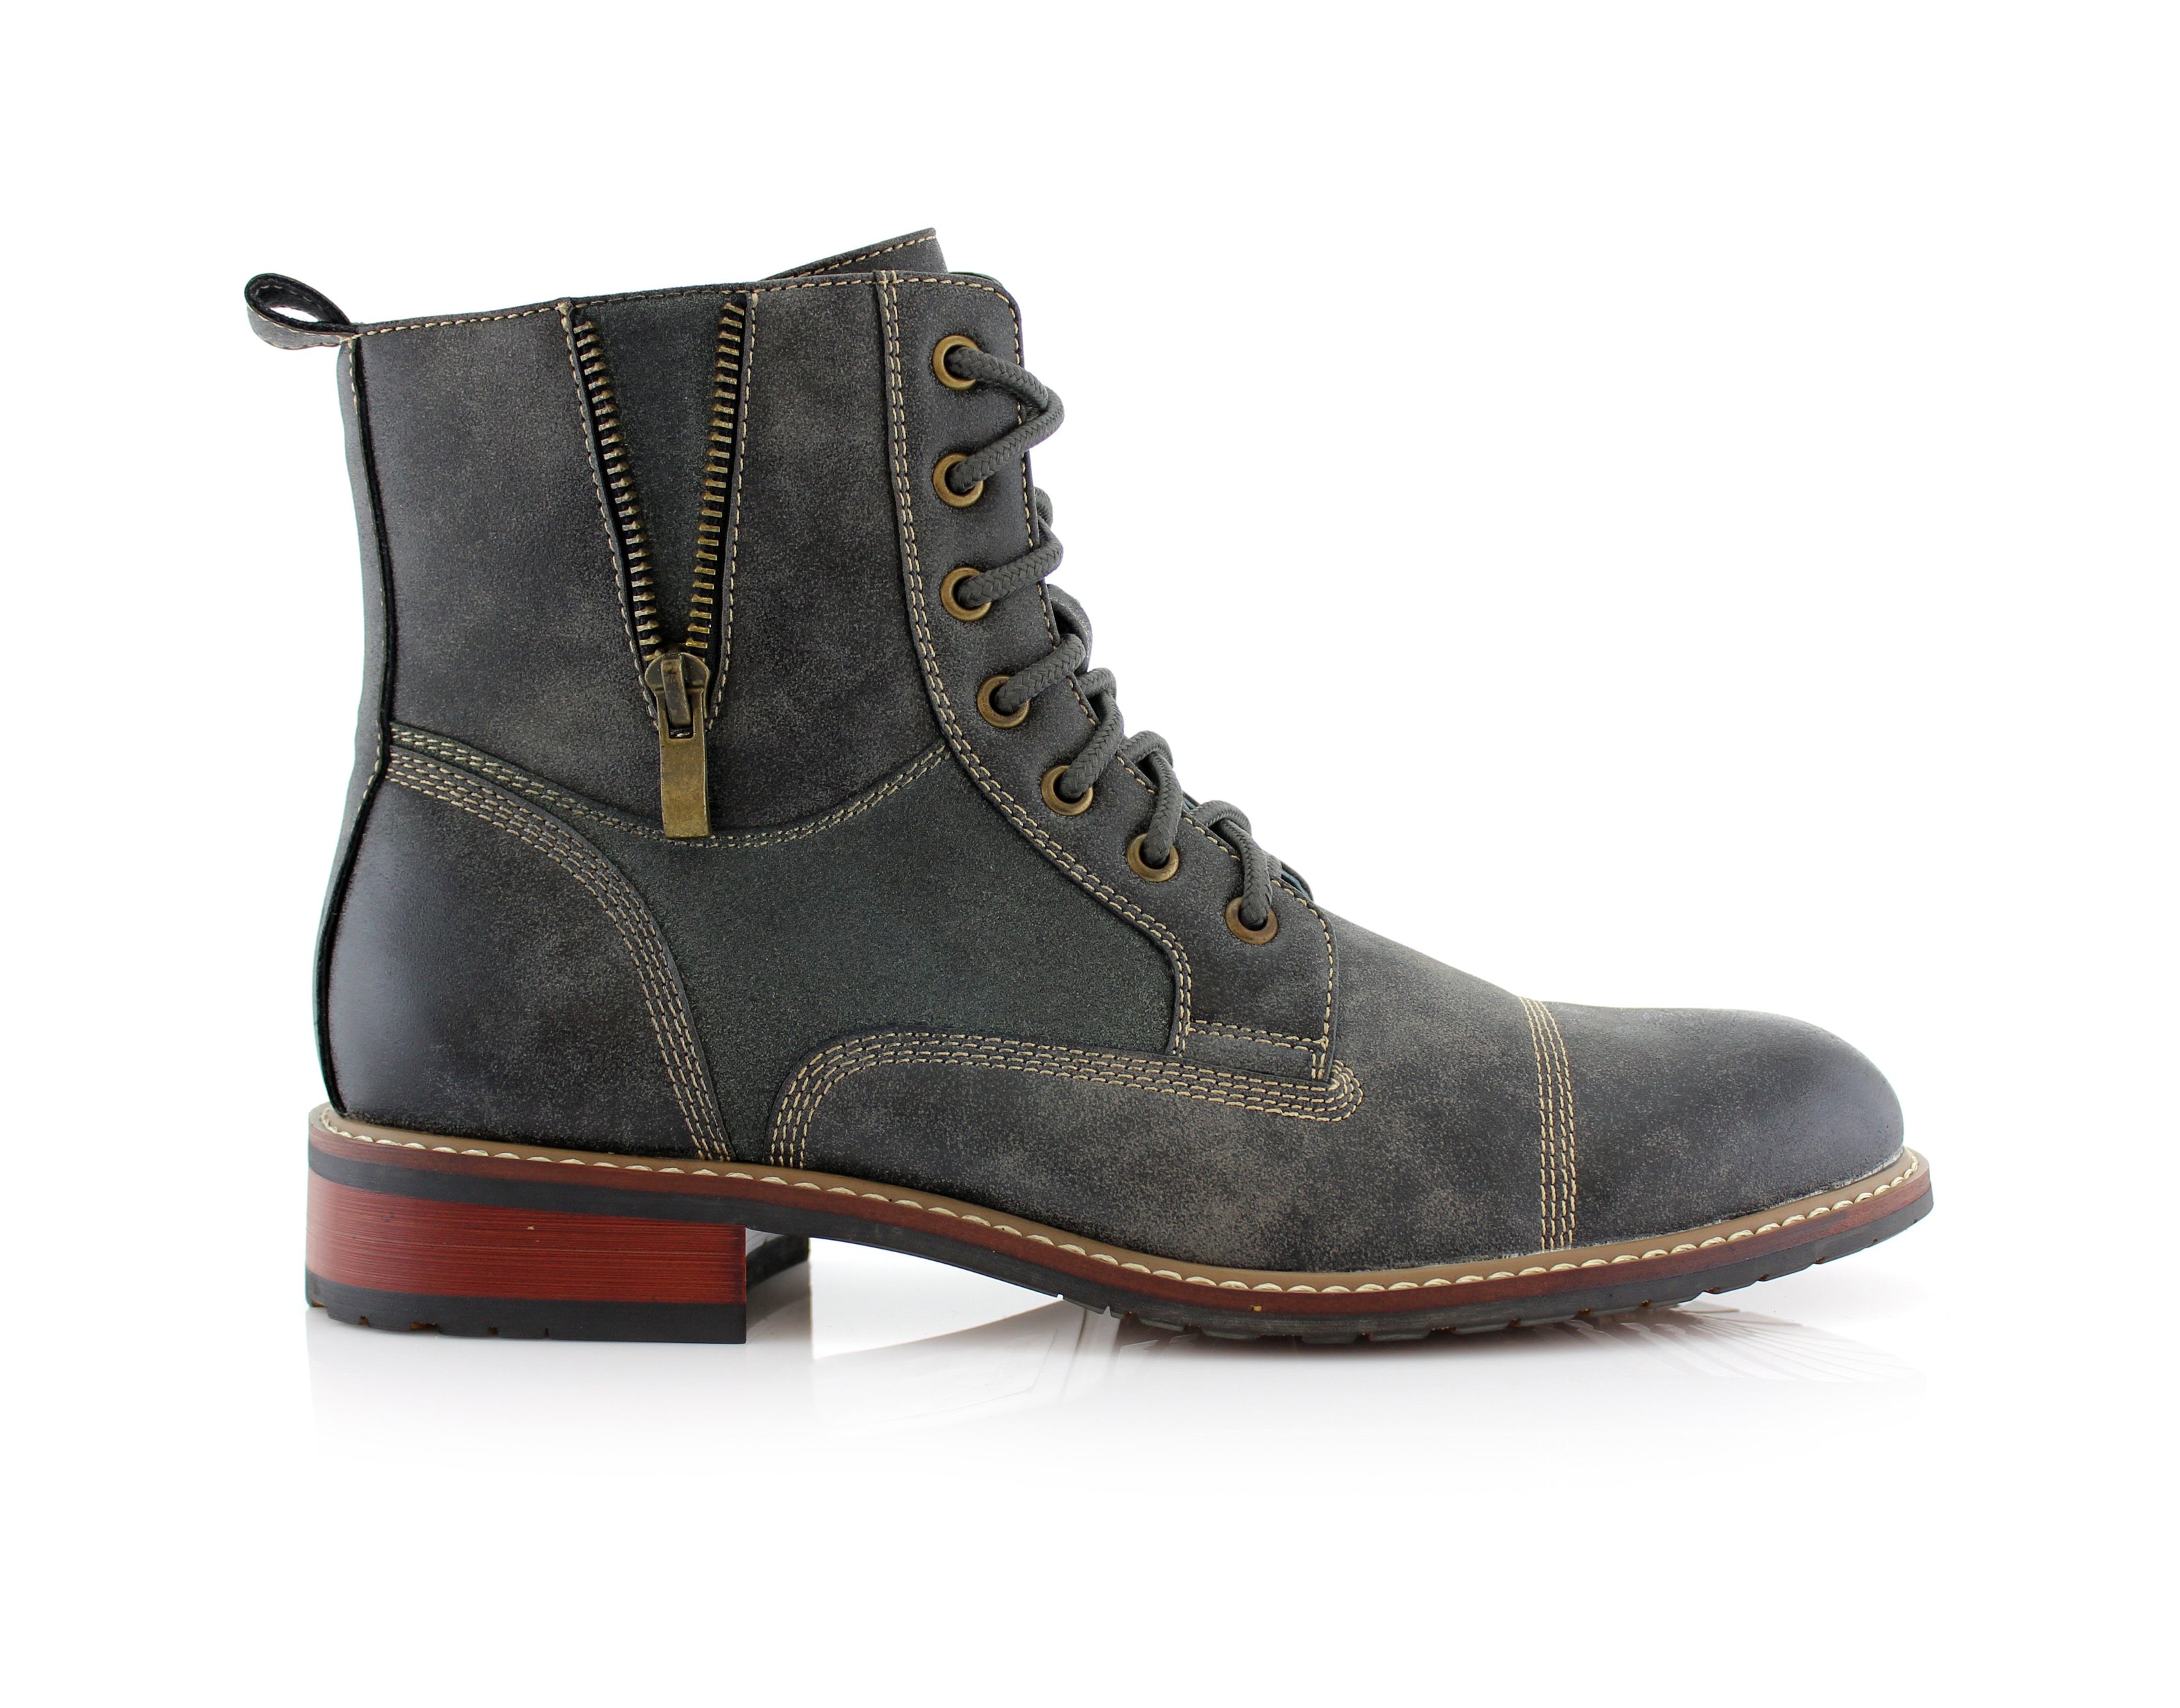 Men's Combat Boots 2021 | Andy | Ferro Aldo Fashion Men's Shoes